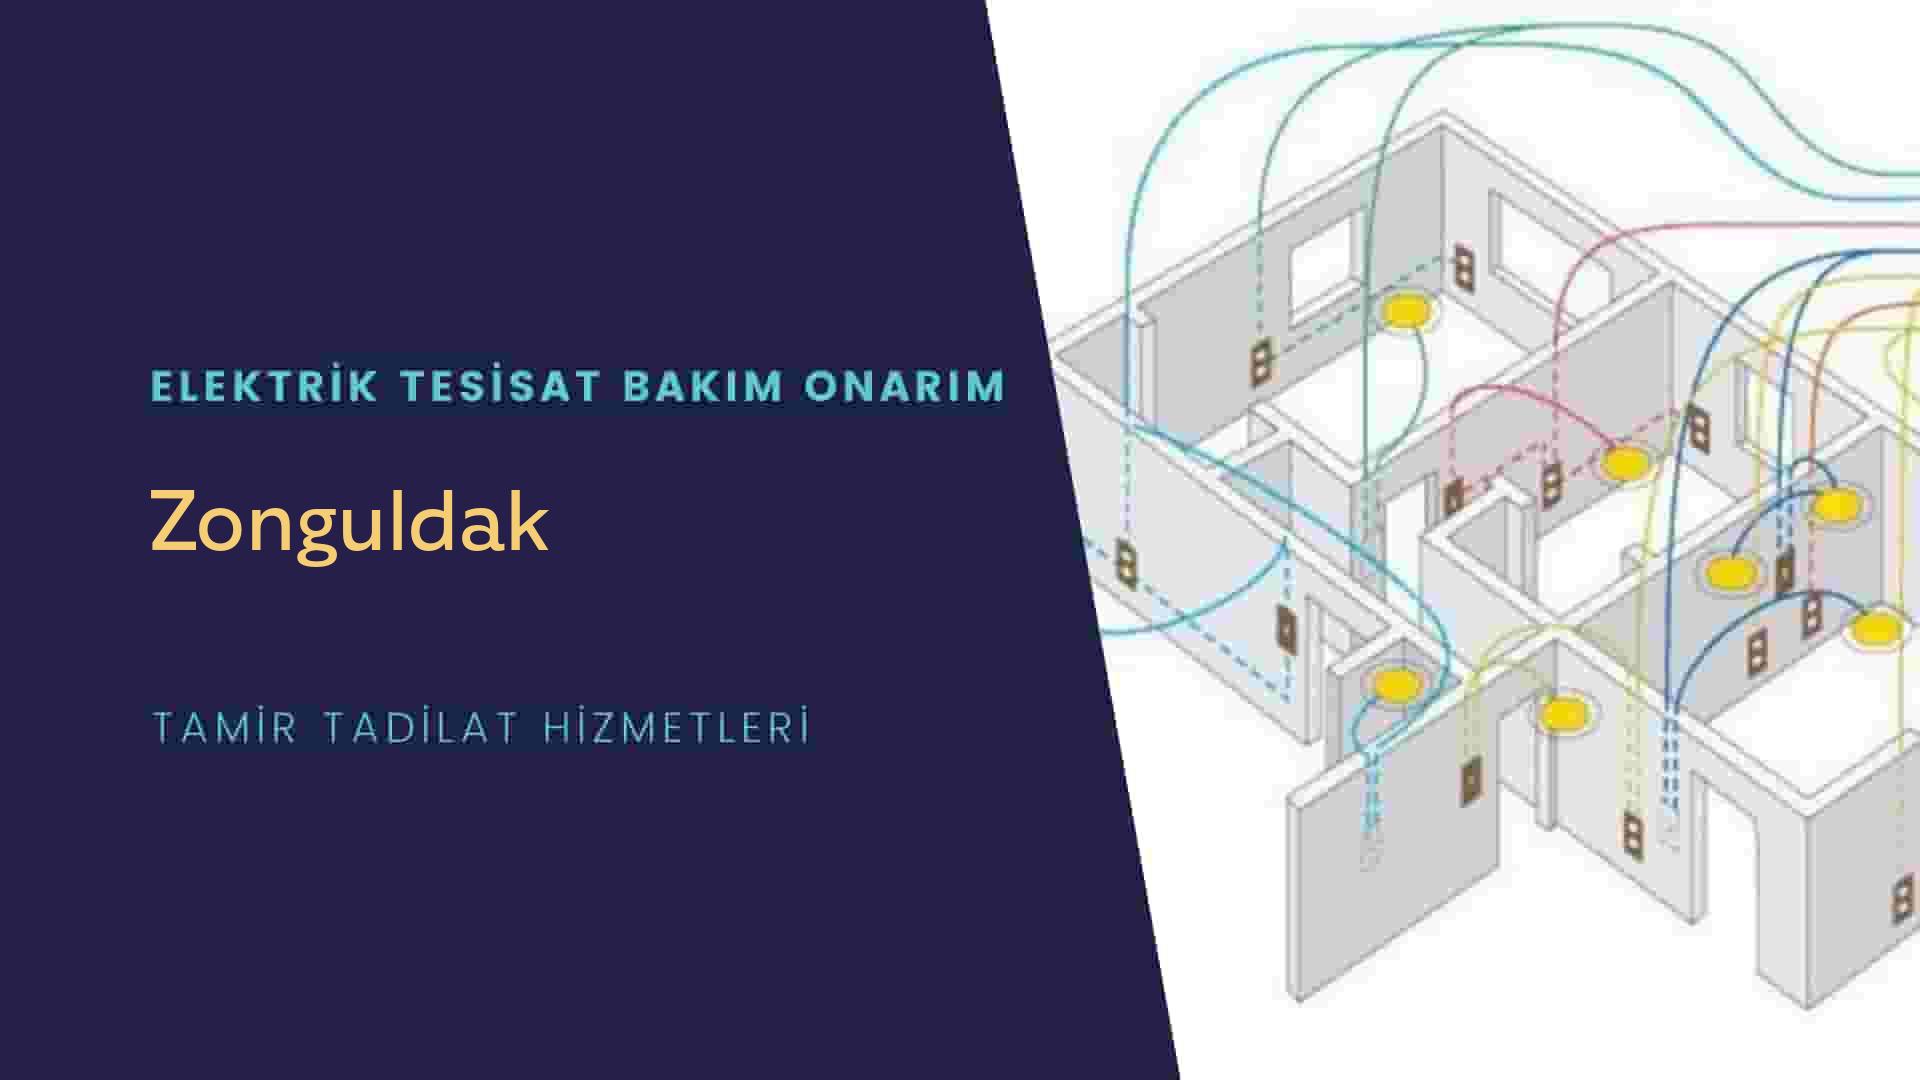 Zonguldak'ta elektrik tesisatı ustalarımı arıyorsunuz doğru adrestenizi Zonguldak elektrik tesisatı ustalarımız 7/24 sizlere hizmet vermekten mutluluk duyar.